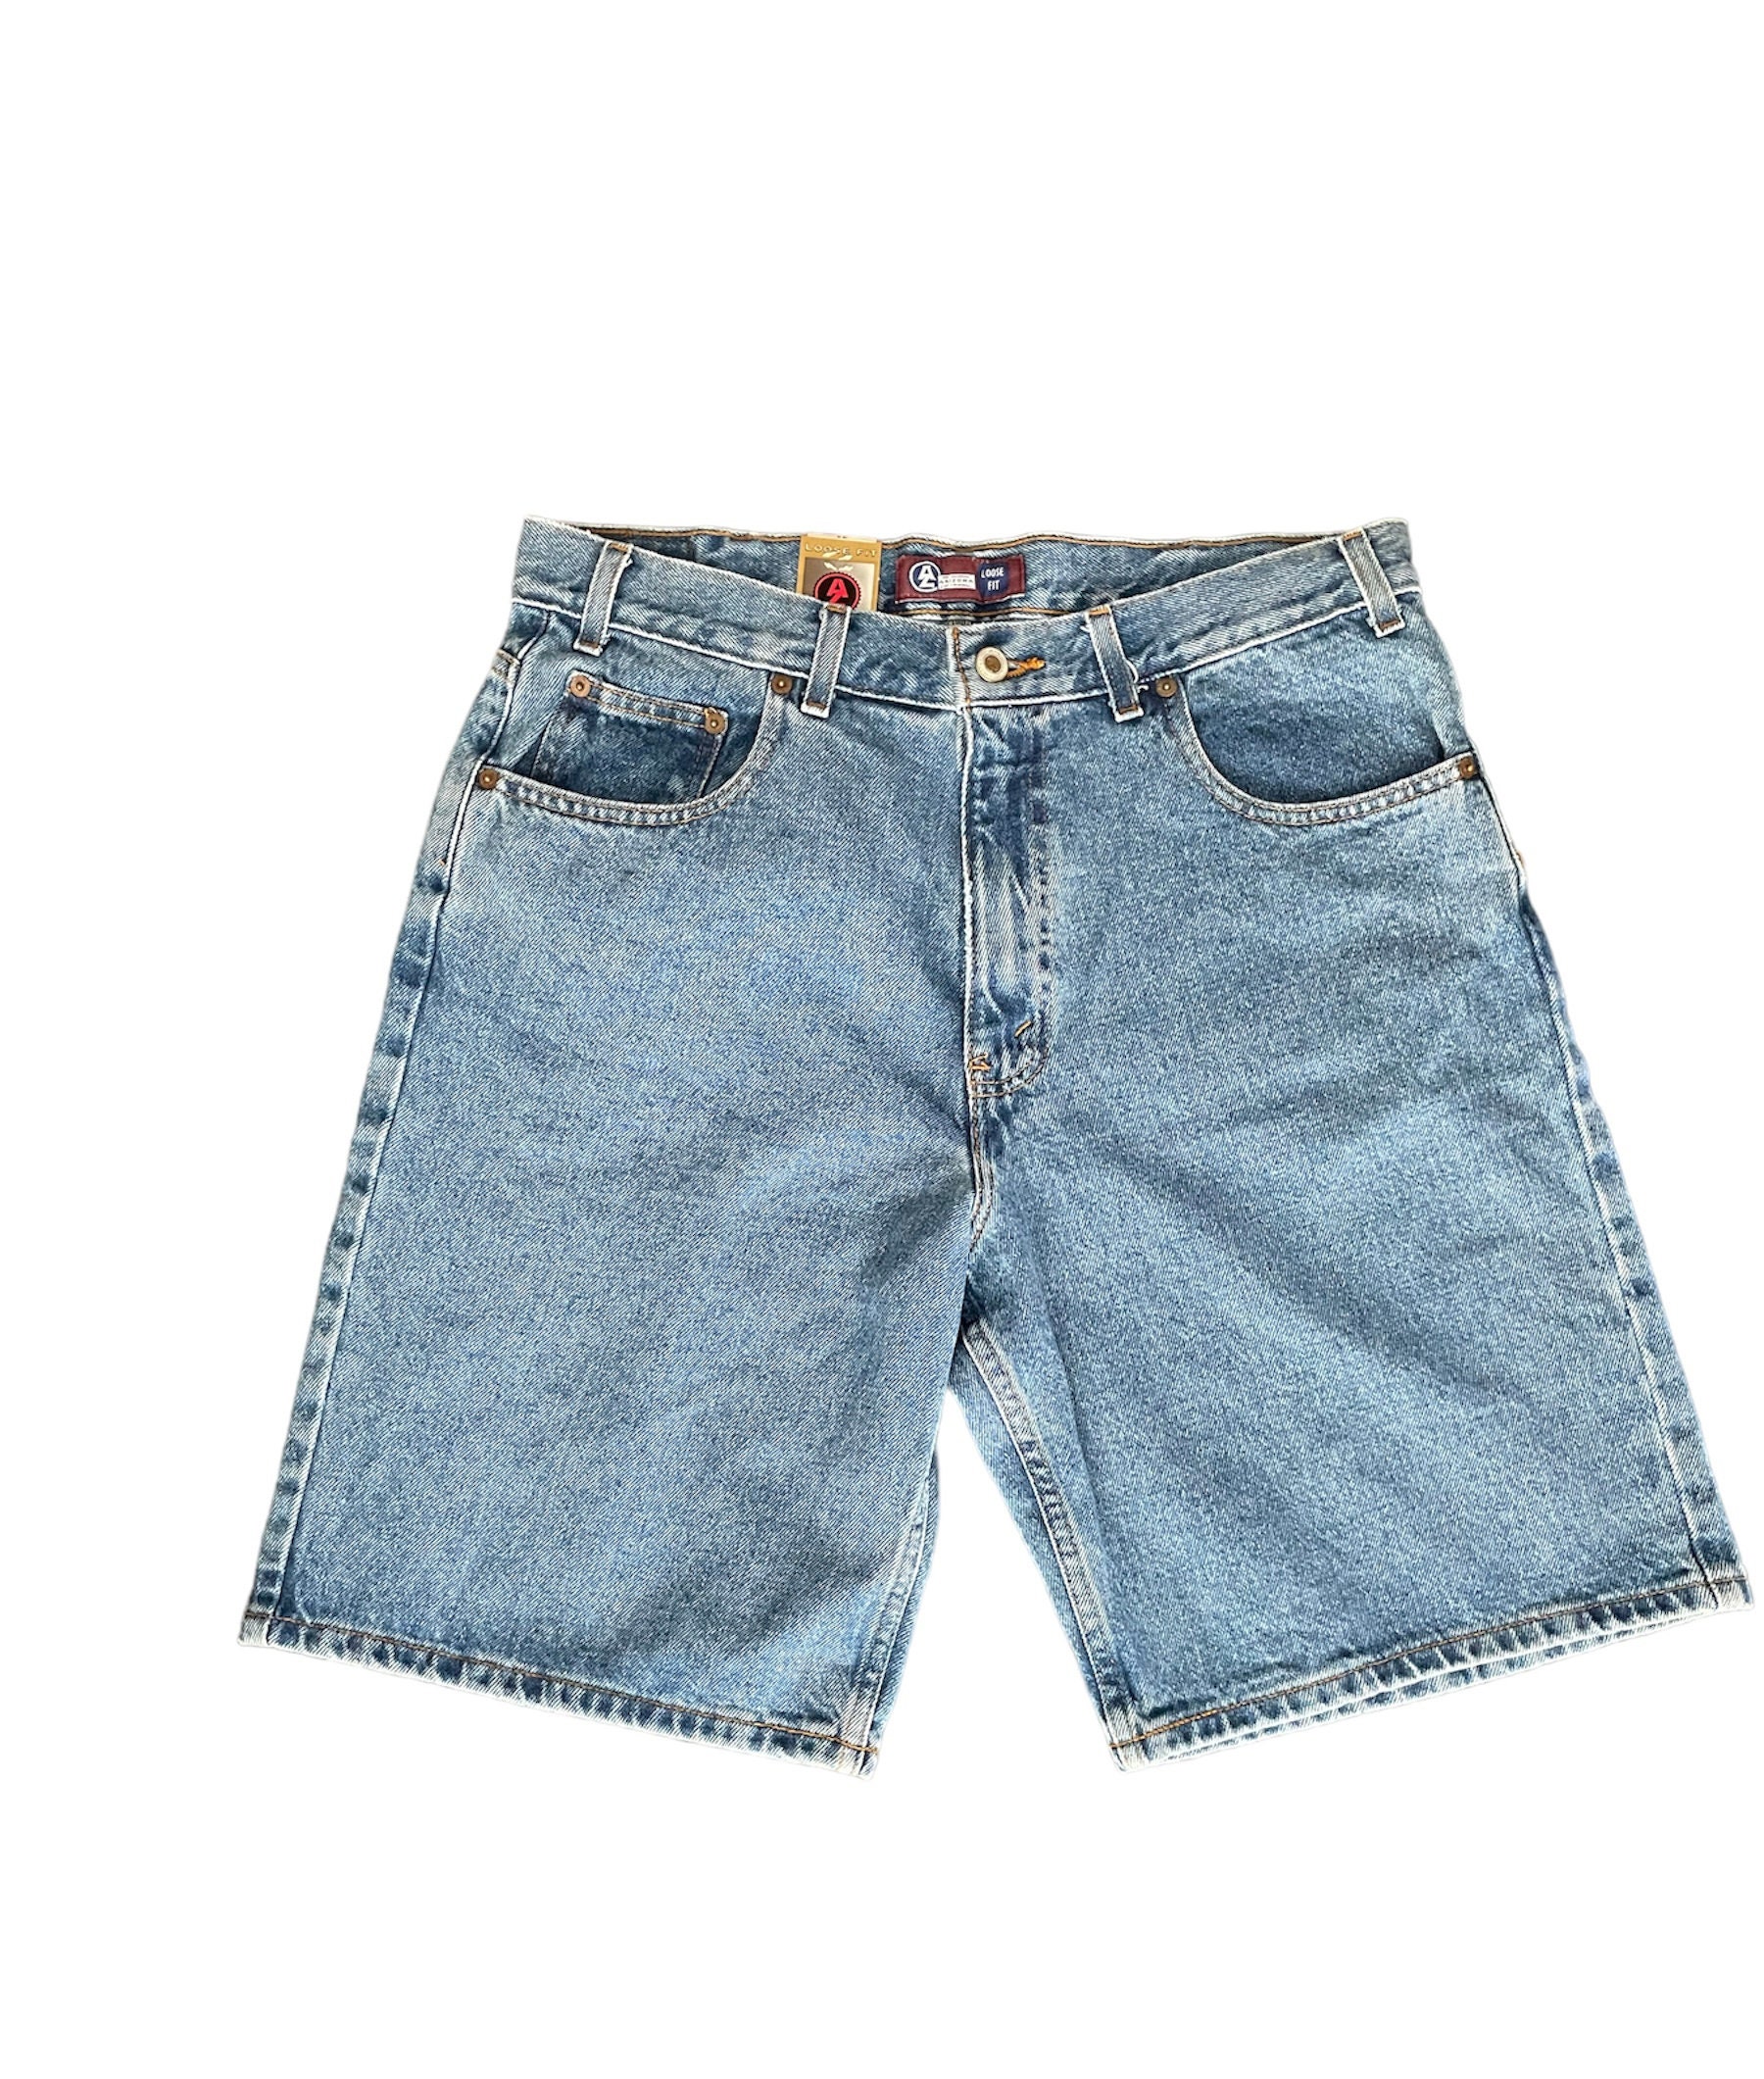 Shorts Arizona Etsy - Jeans